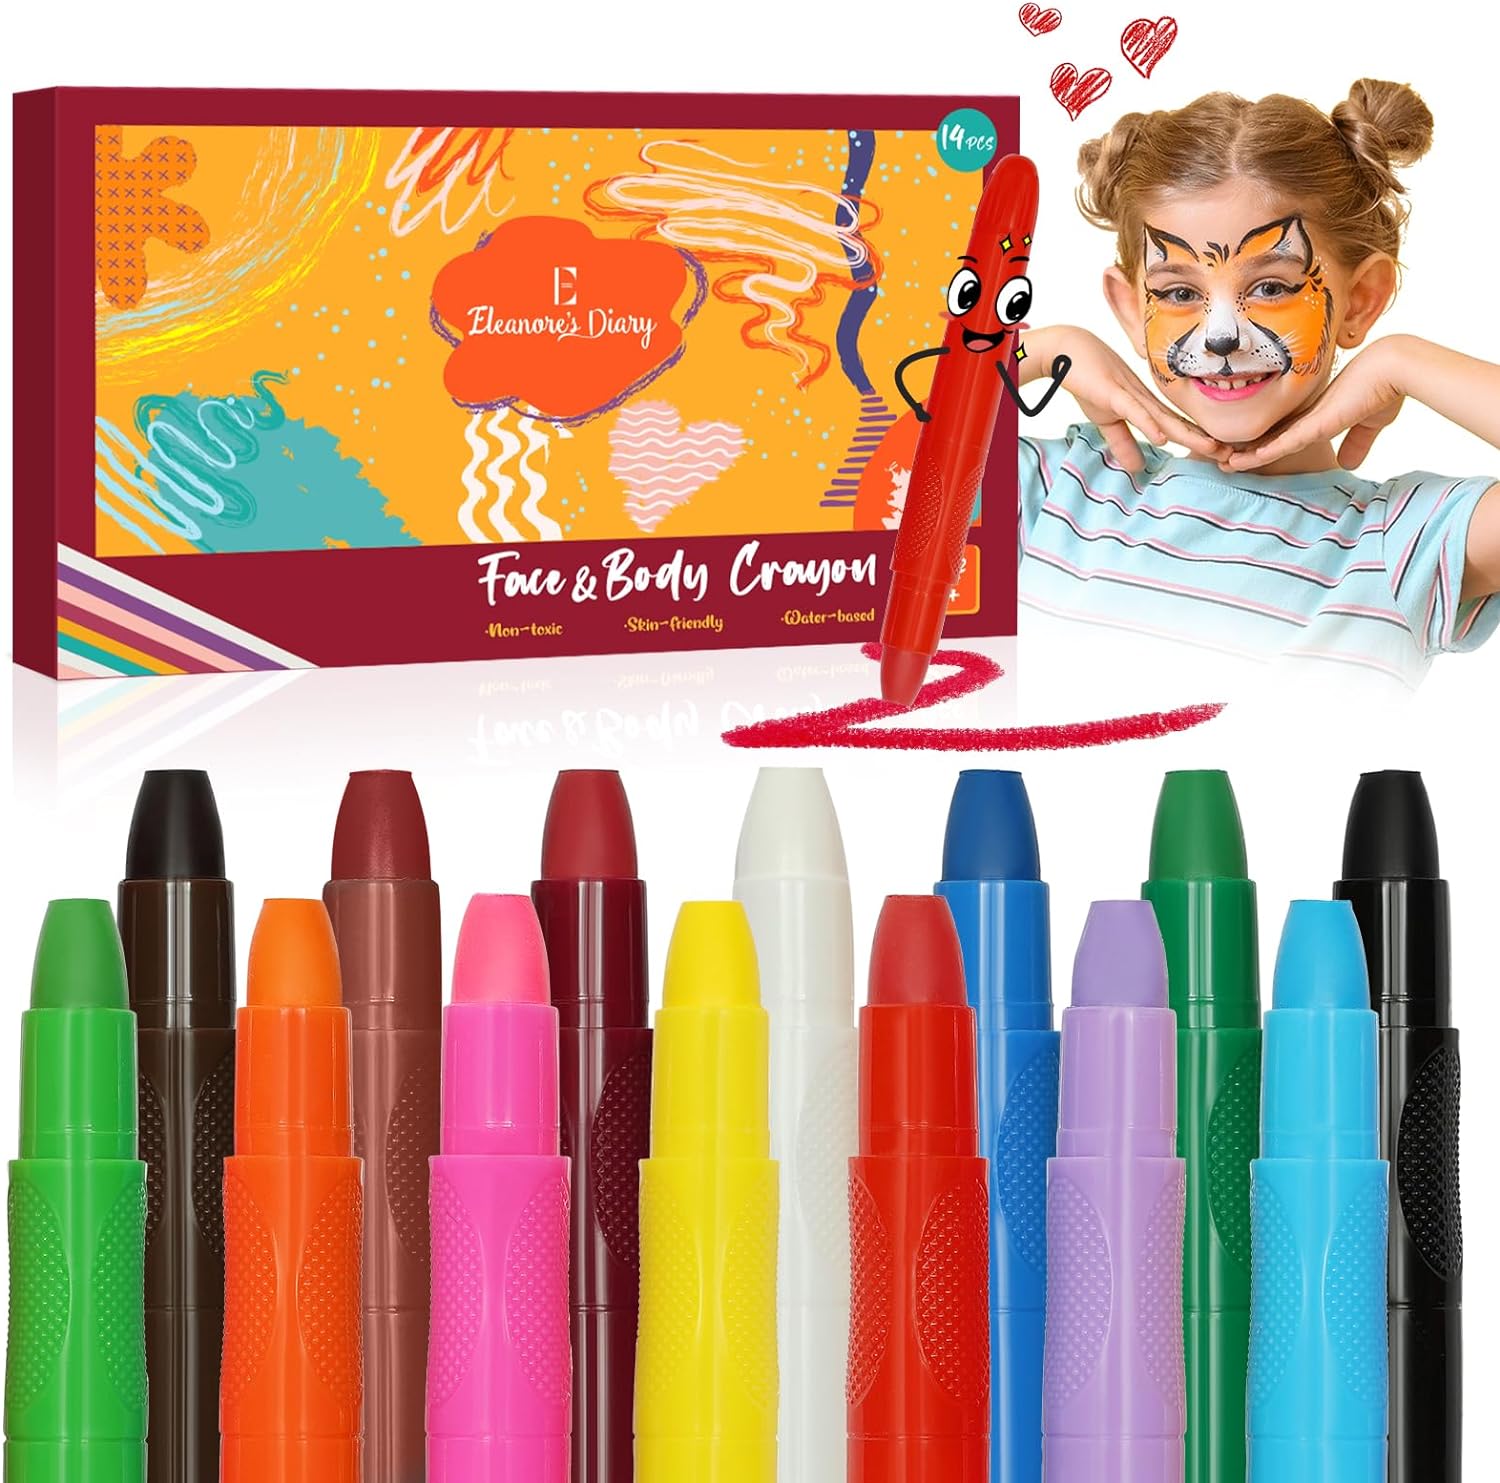 Pinturas Cara para Niños Carnaval, Eleanore's Diary 14 Colores Crayones de Pintura Facial y Cuerpo, Seguro y No Tóxico Lavables, Maquillaje Pintacaras